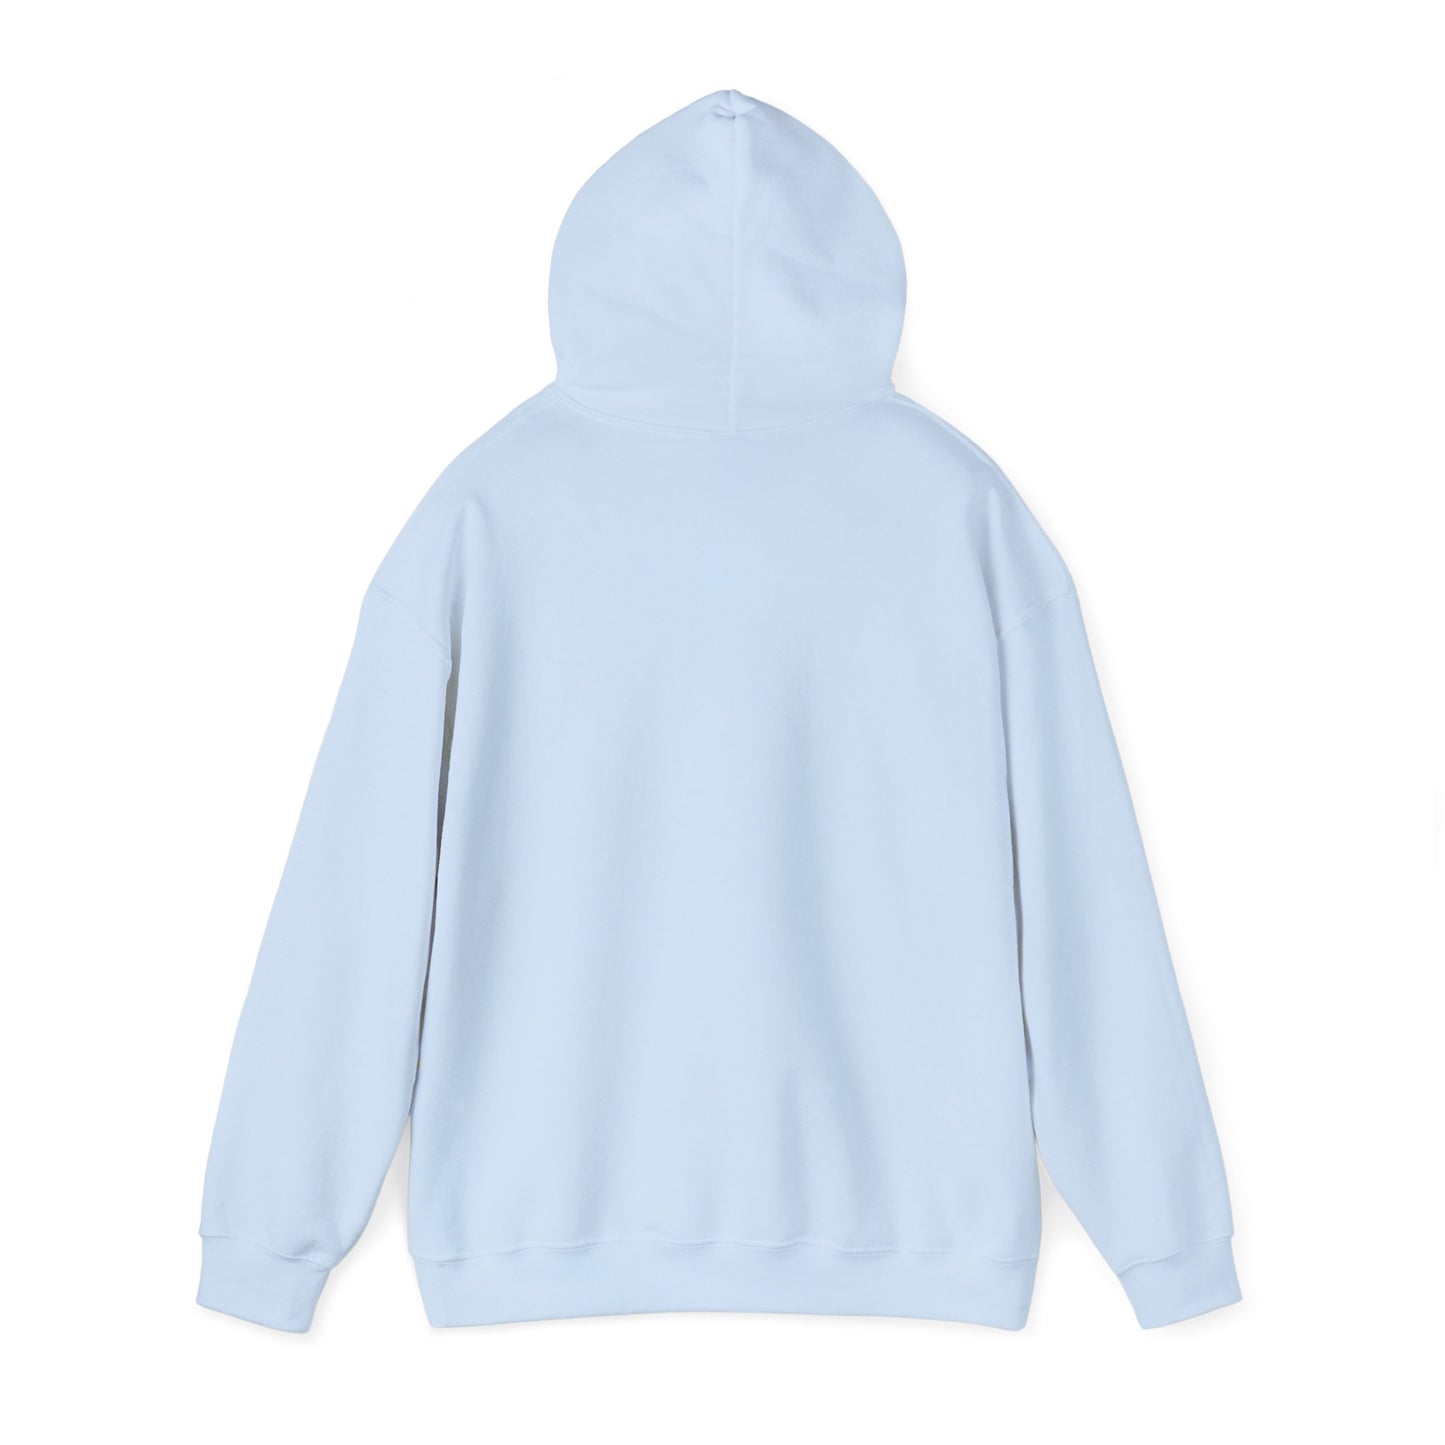 Unisex MACA Hooded Sweatshirt